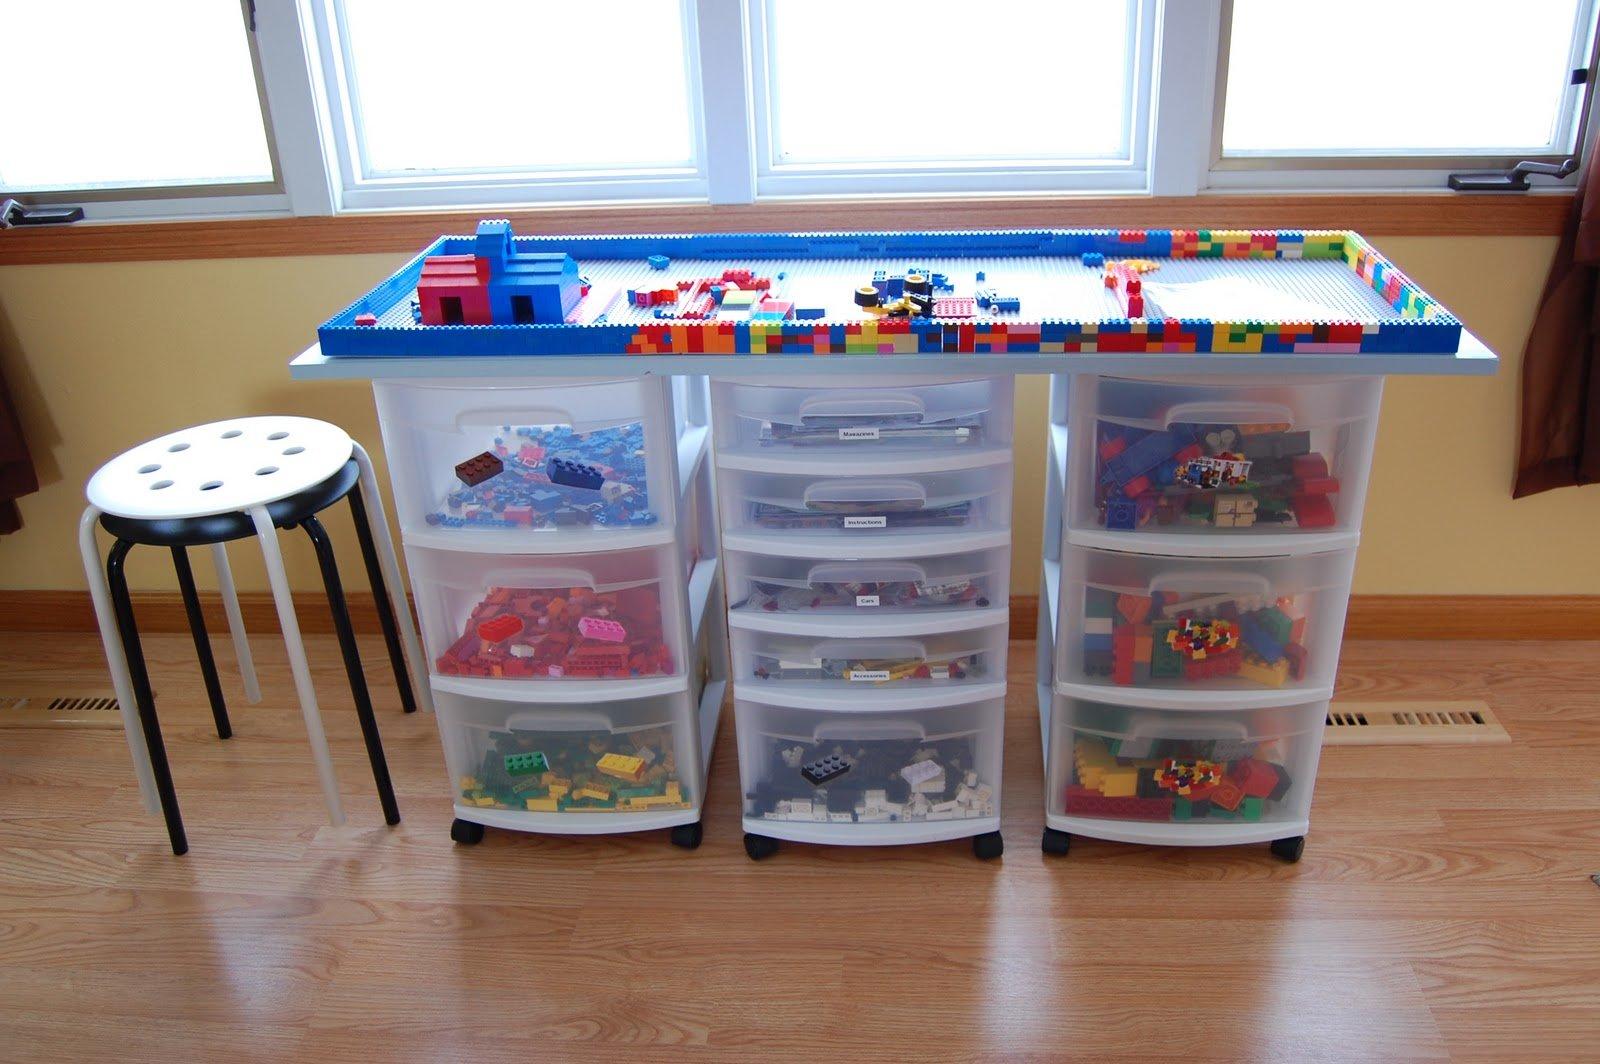 Lego play table